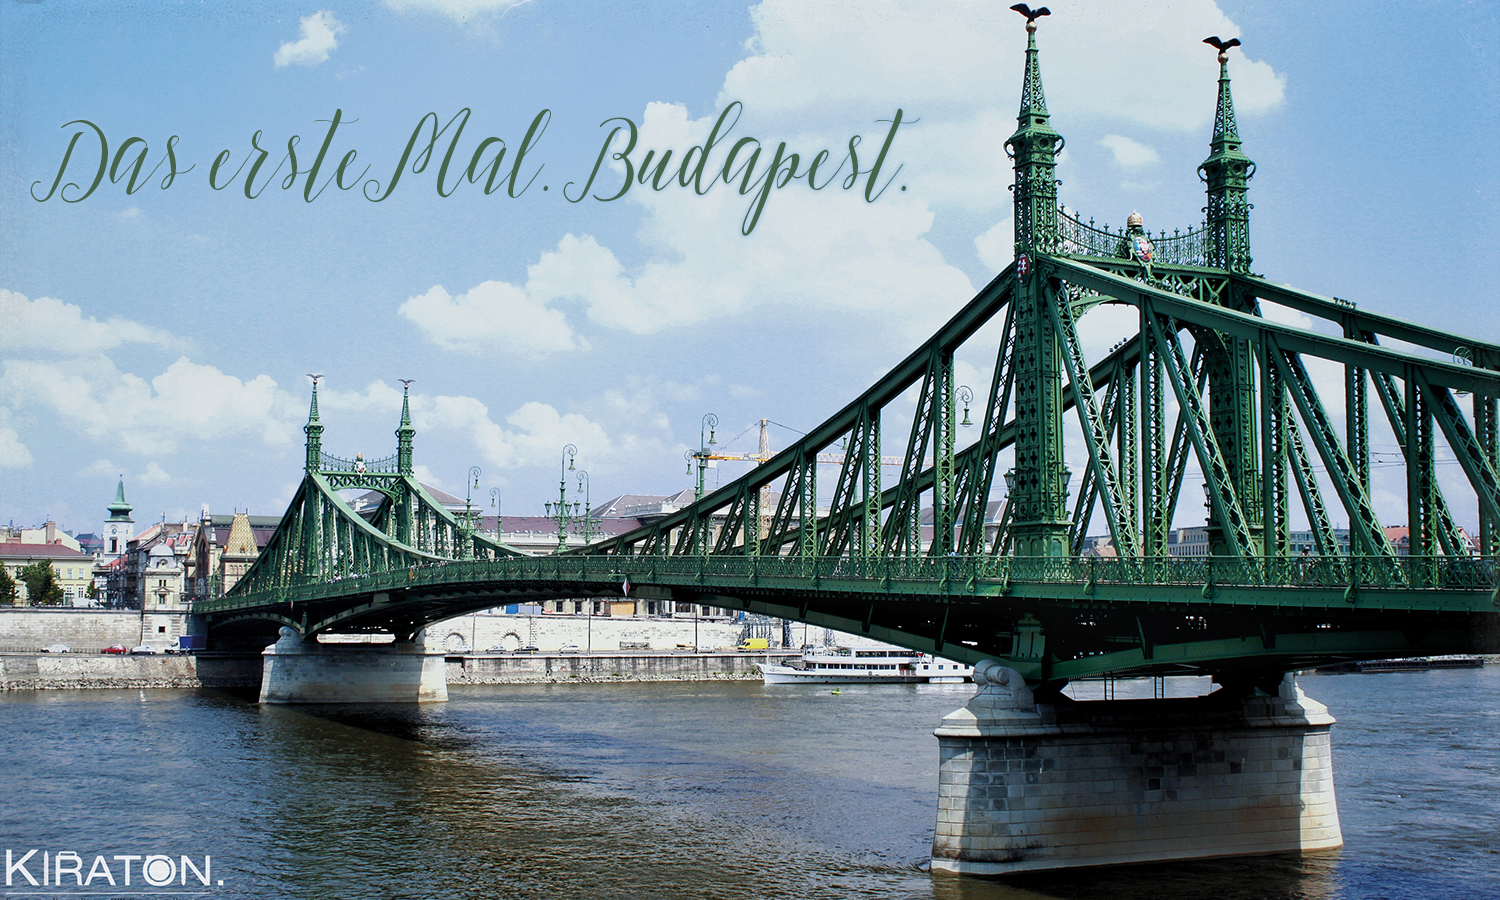 Das erste Mal. Budapest.